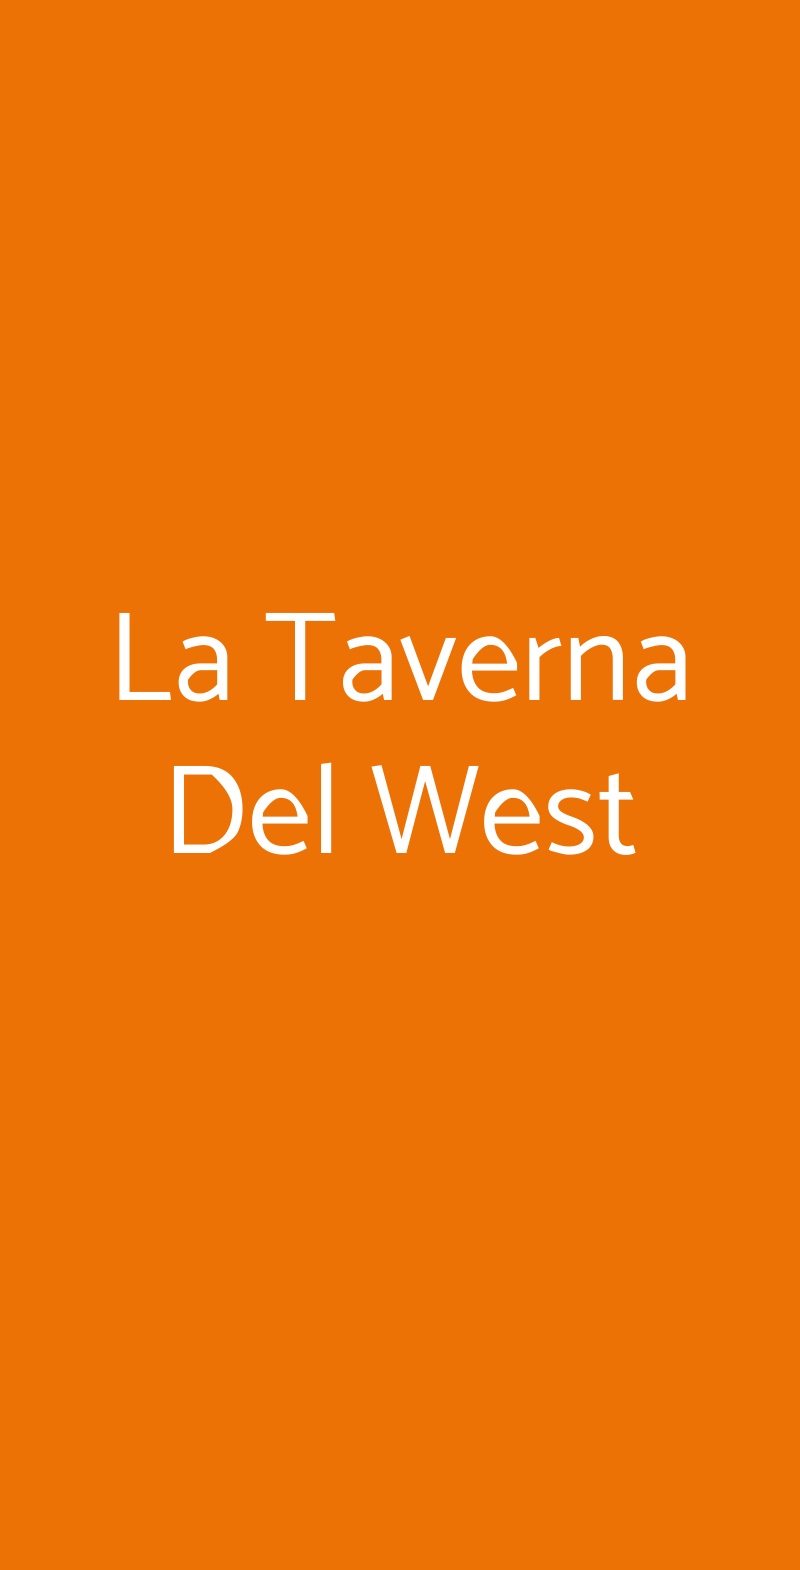 La Taverna Del West Roma menù 1 pagina